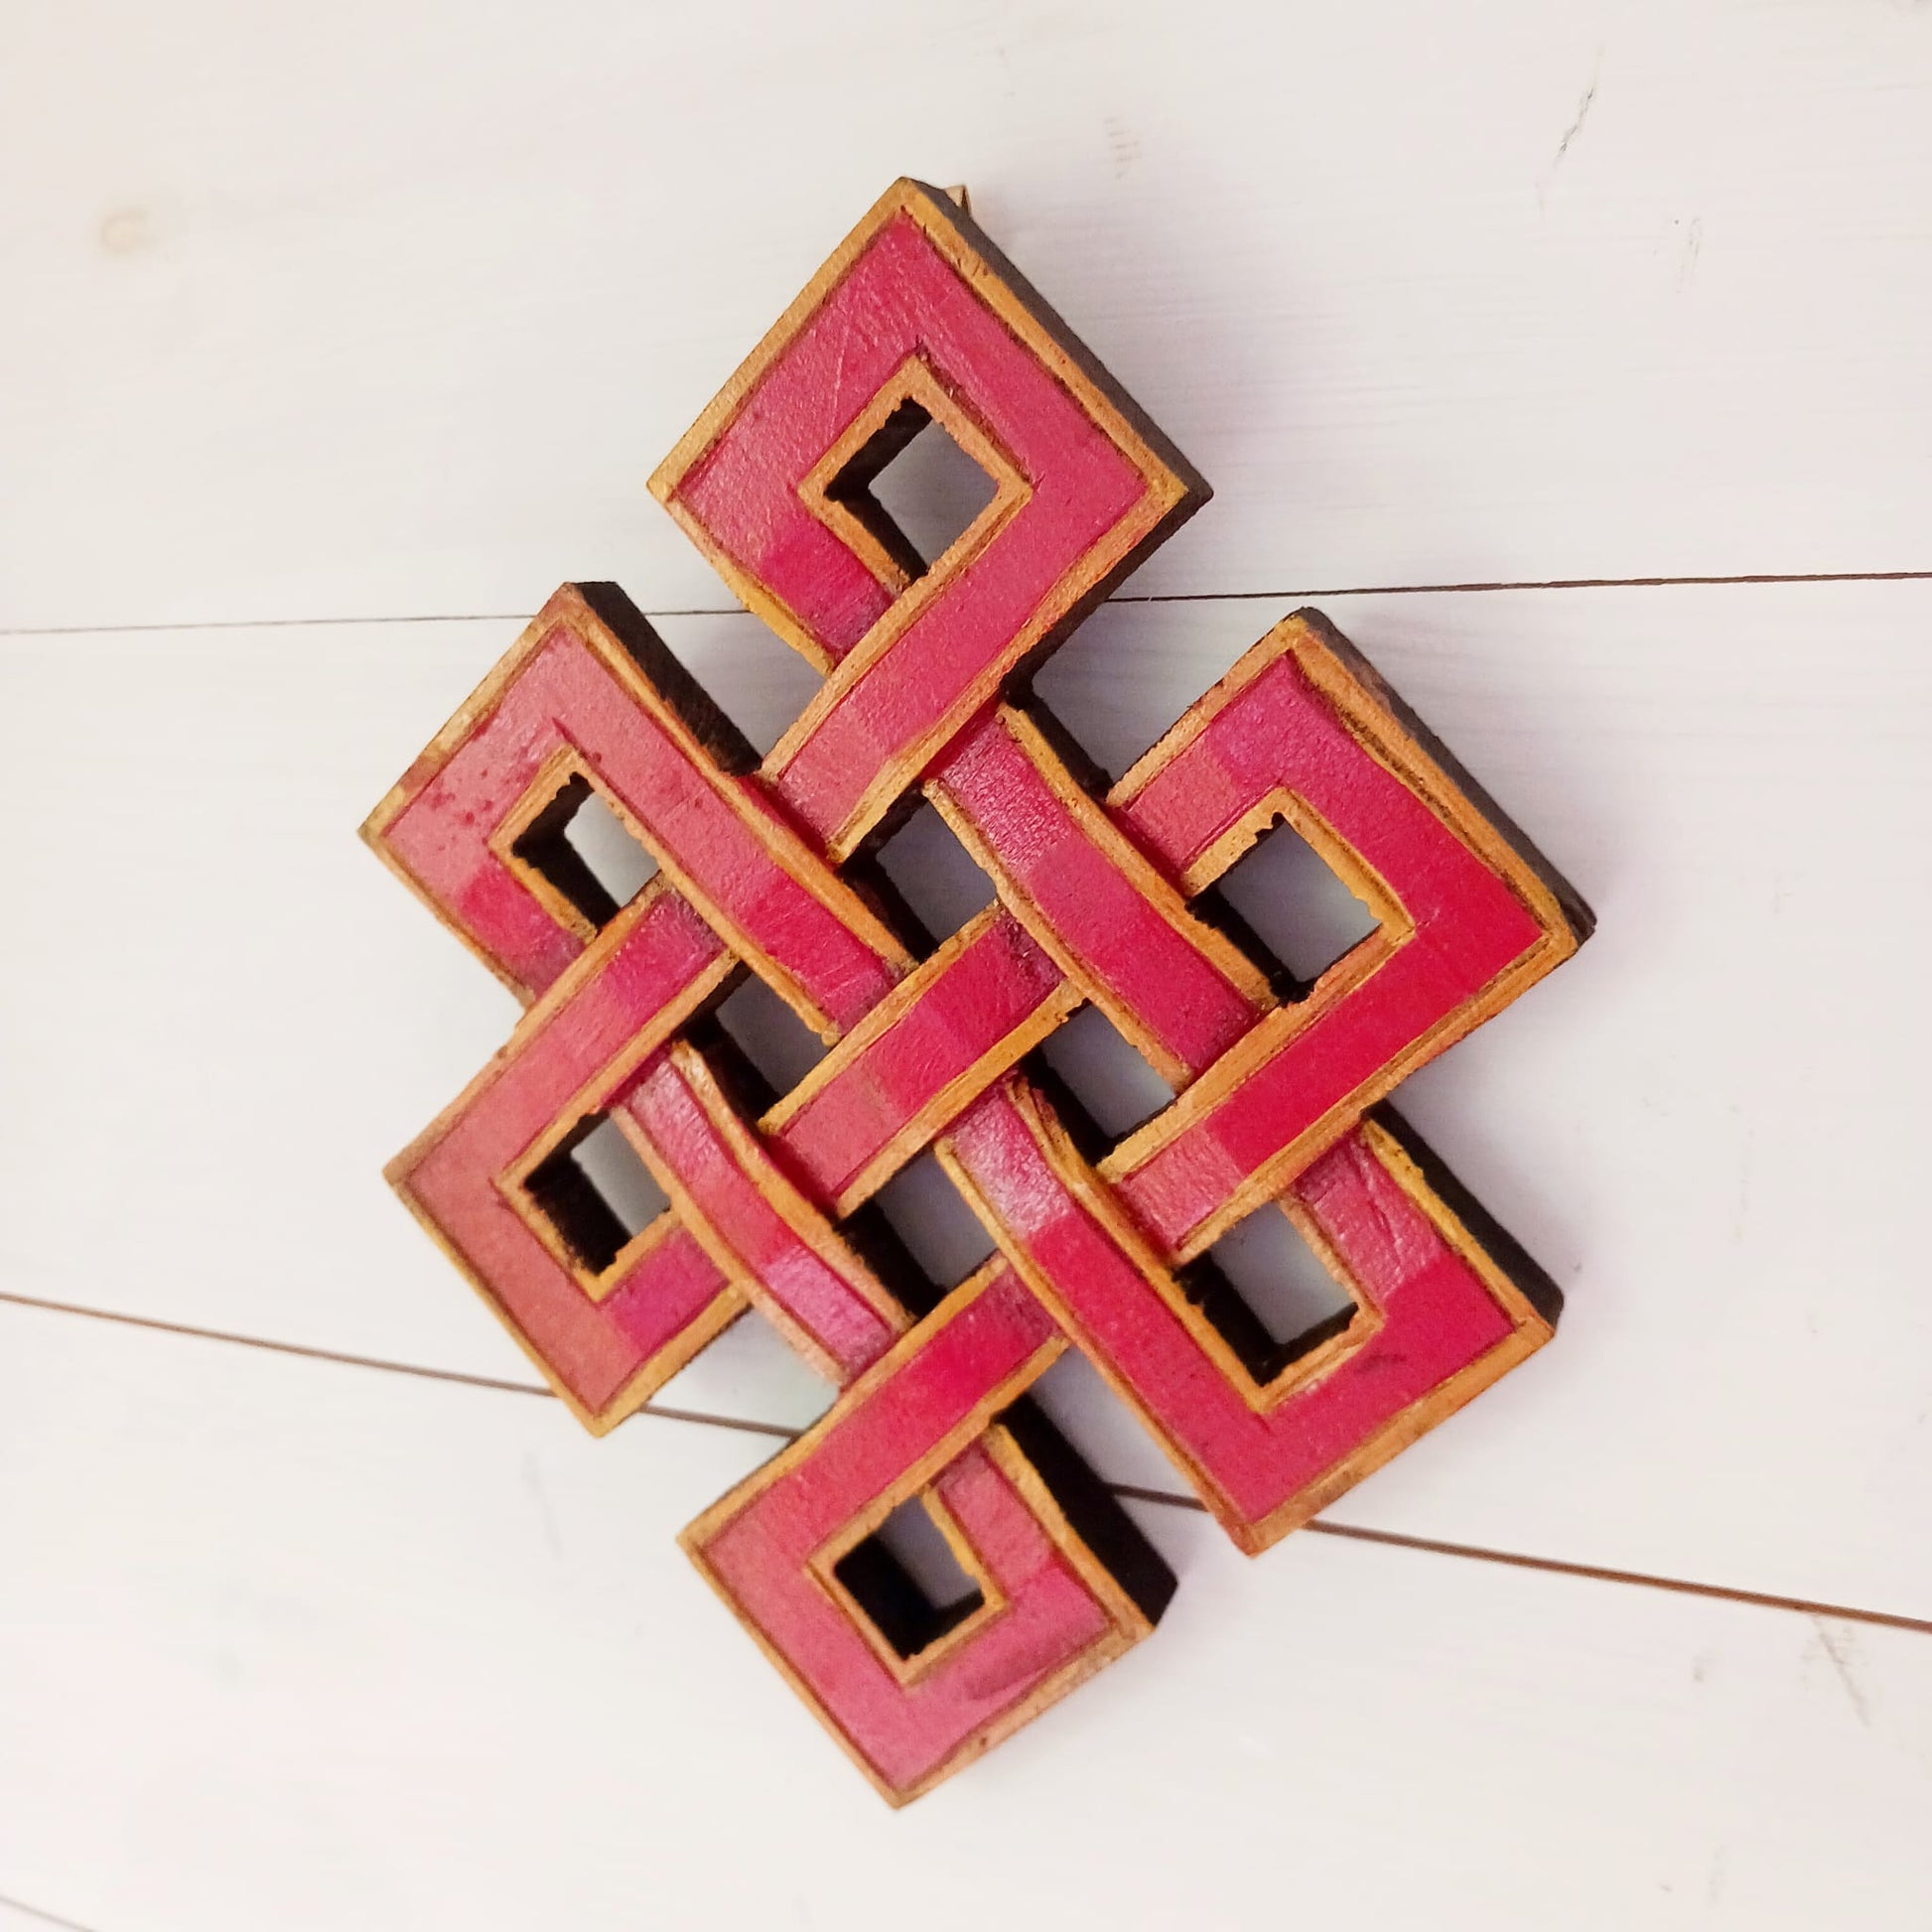 Tibetan Endless Knot wooden wall décor 19 X 15 cm